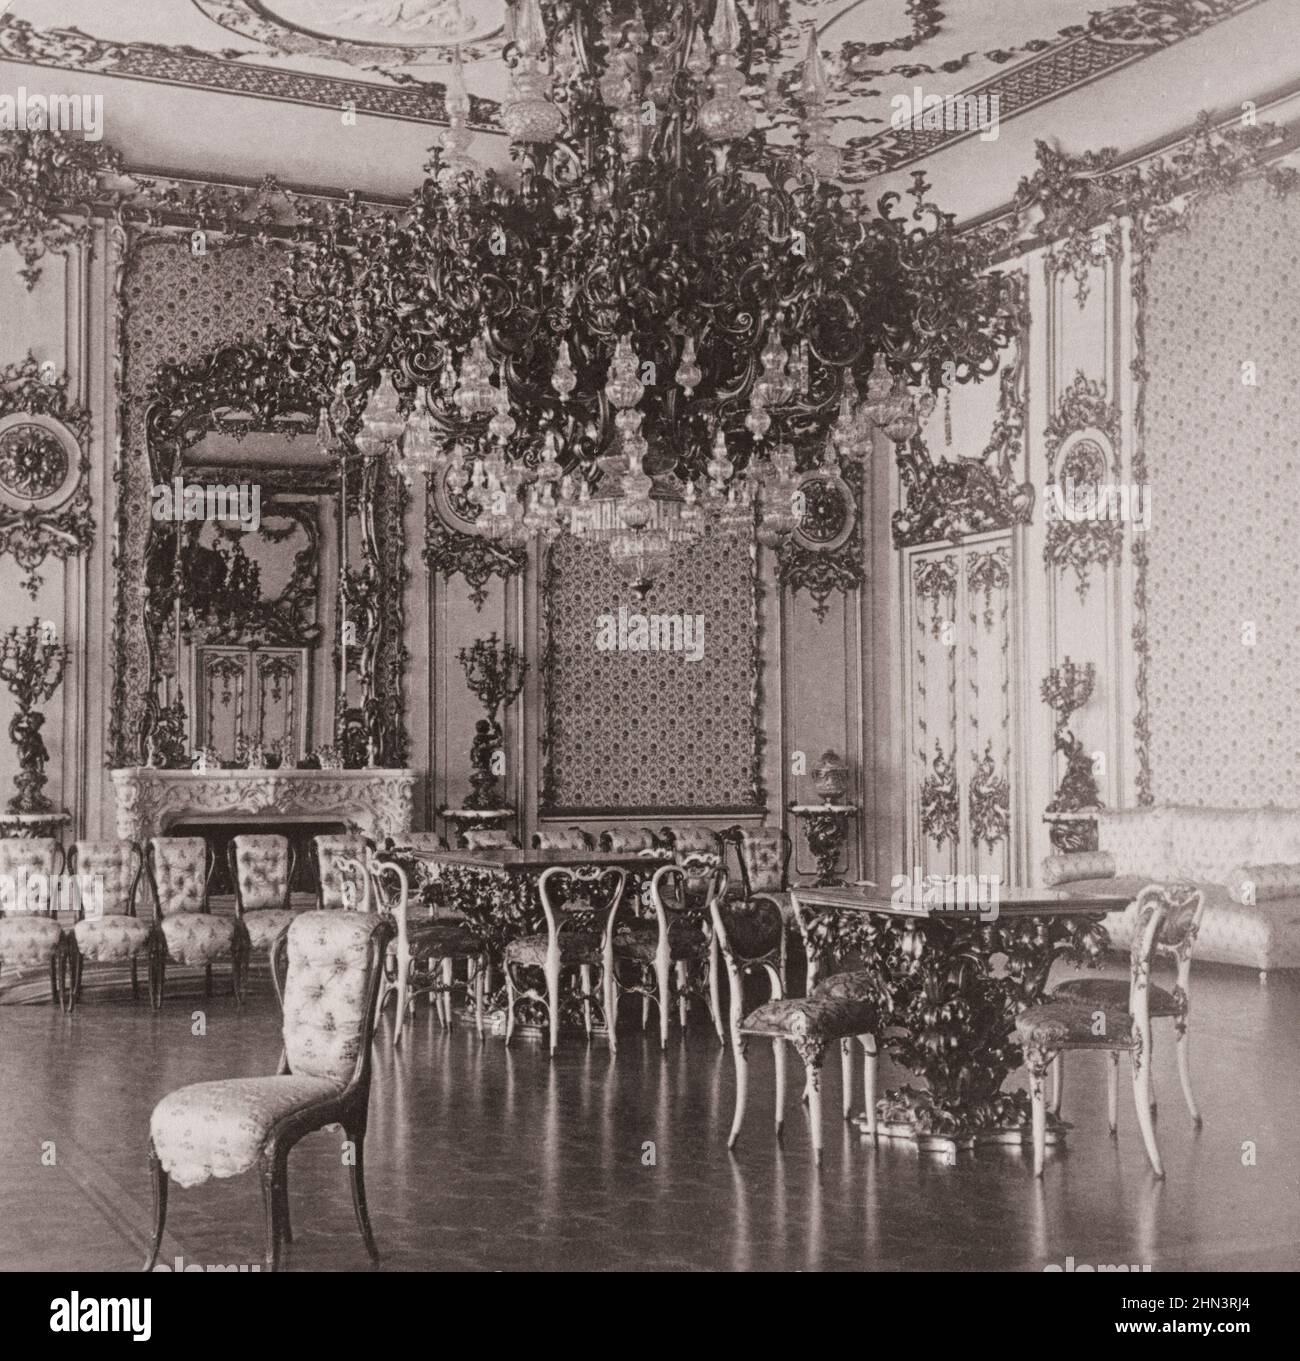 Gran candelabro, Salon de Jenets, Palacio Real de Liechtenstein. Viena, Austria. Finales del siglo 19th Foto de stock